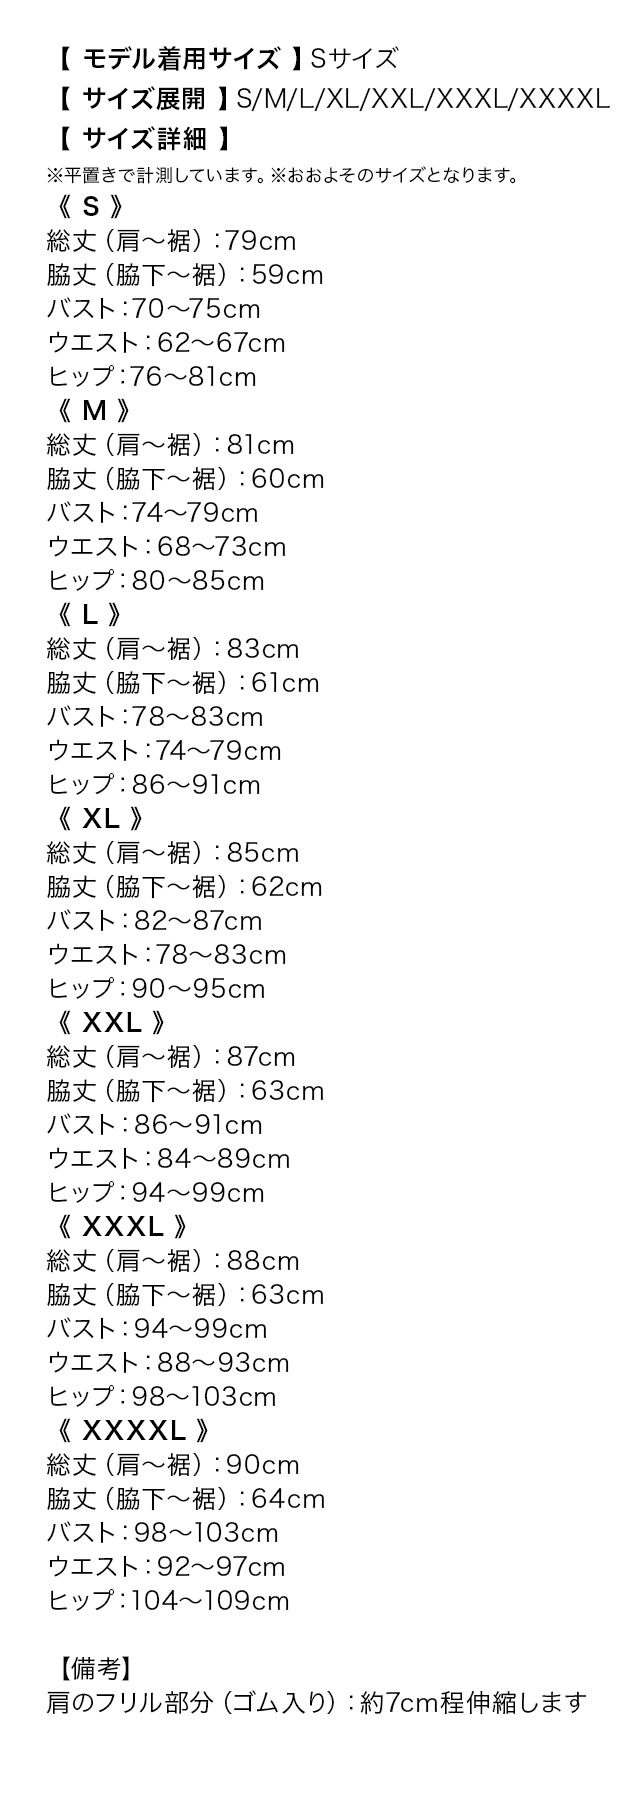 ワンカラーフリルデザインノースリーブタイトミニドレスのサイズ表